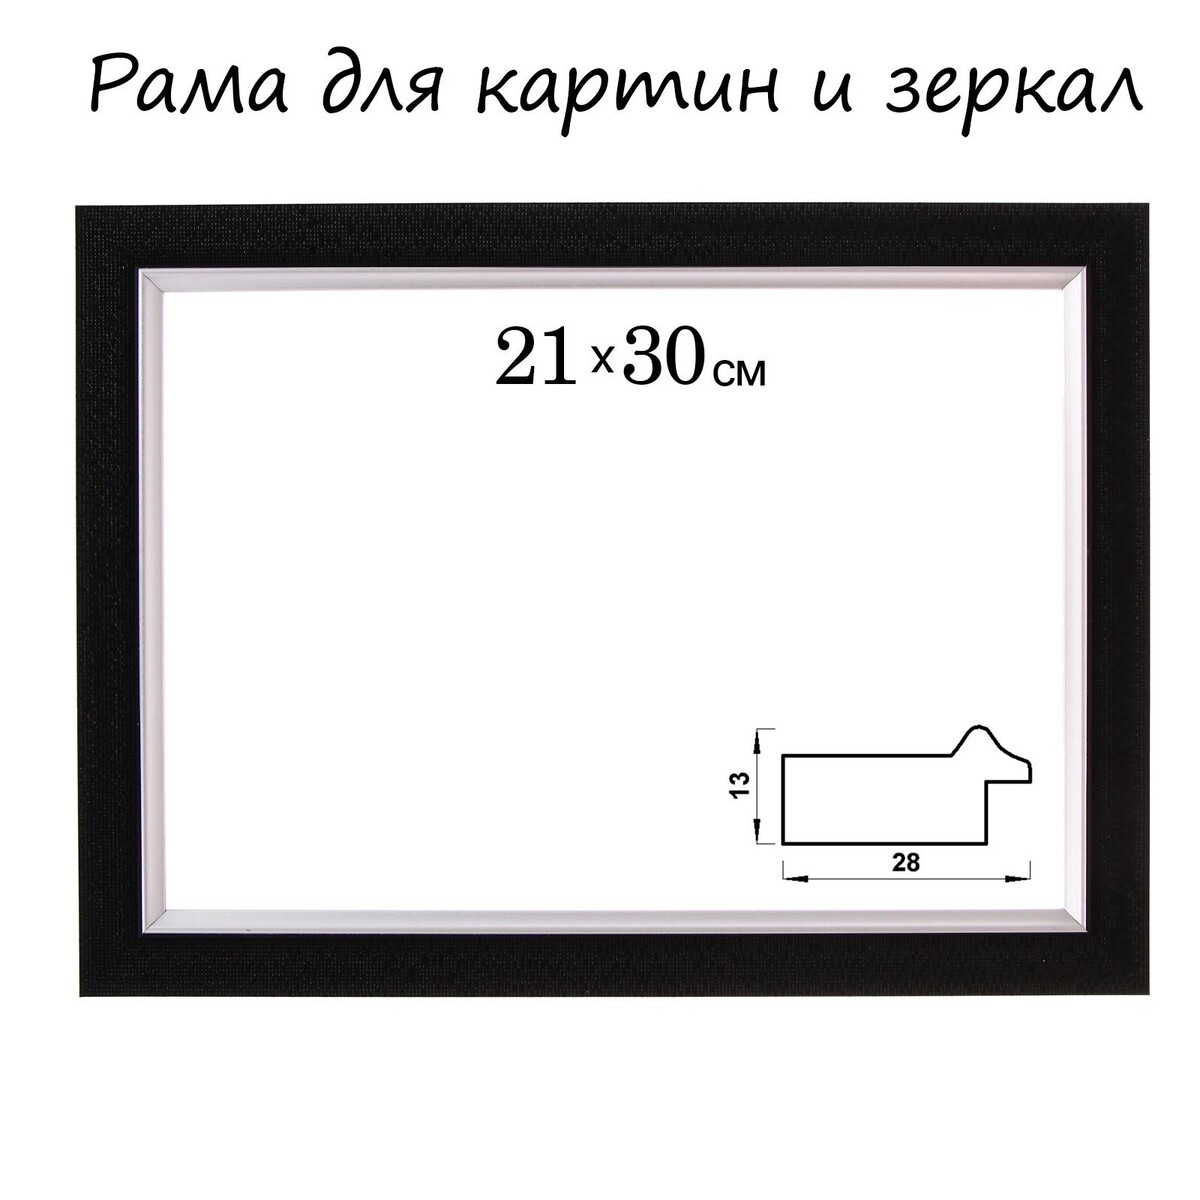 Рама для картин (зеркал) 21 х 30 х 2,8 см, пластиковая, calligrata 6528, черная